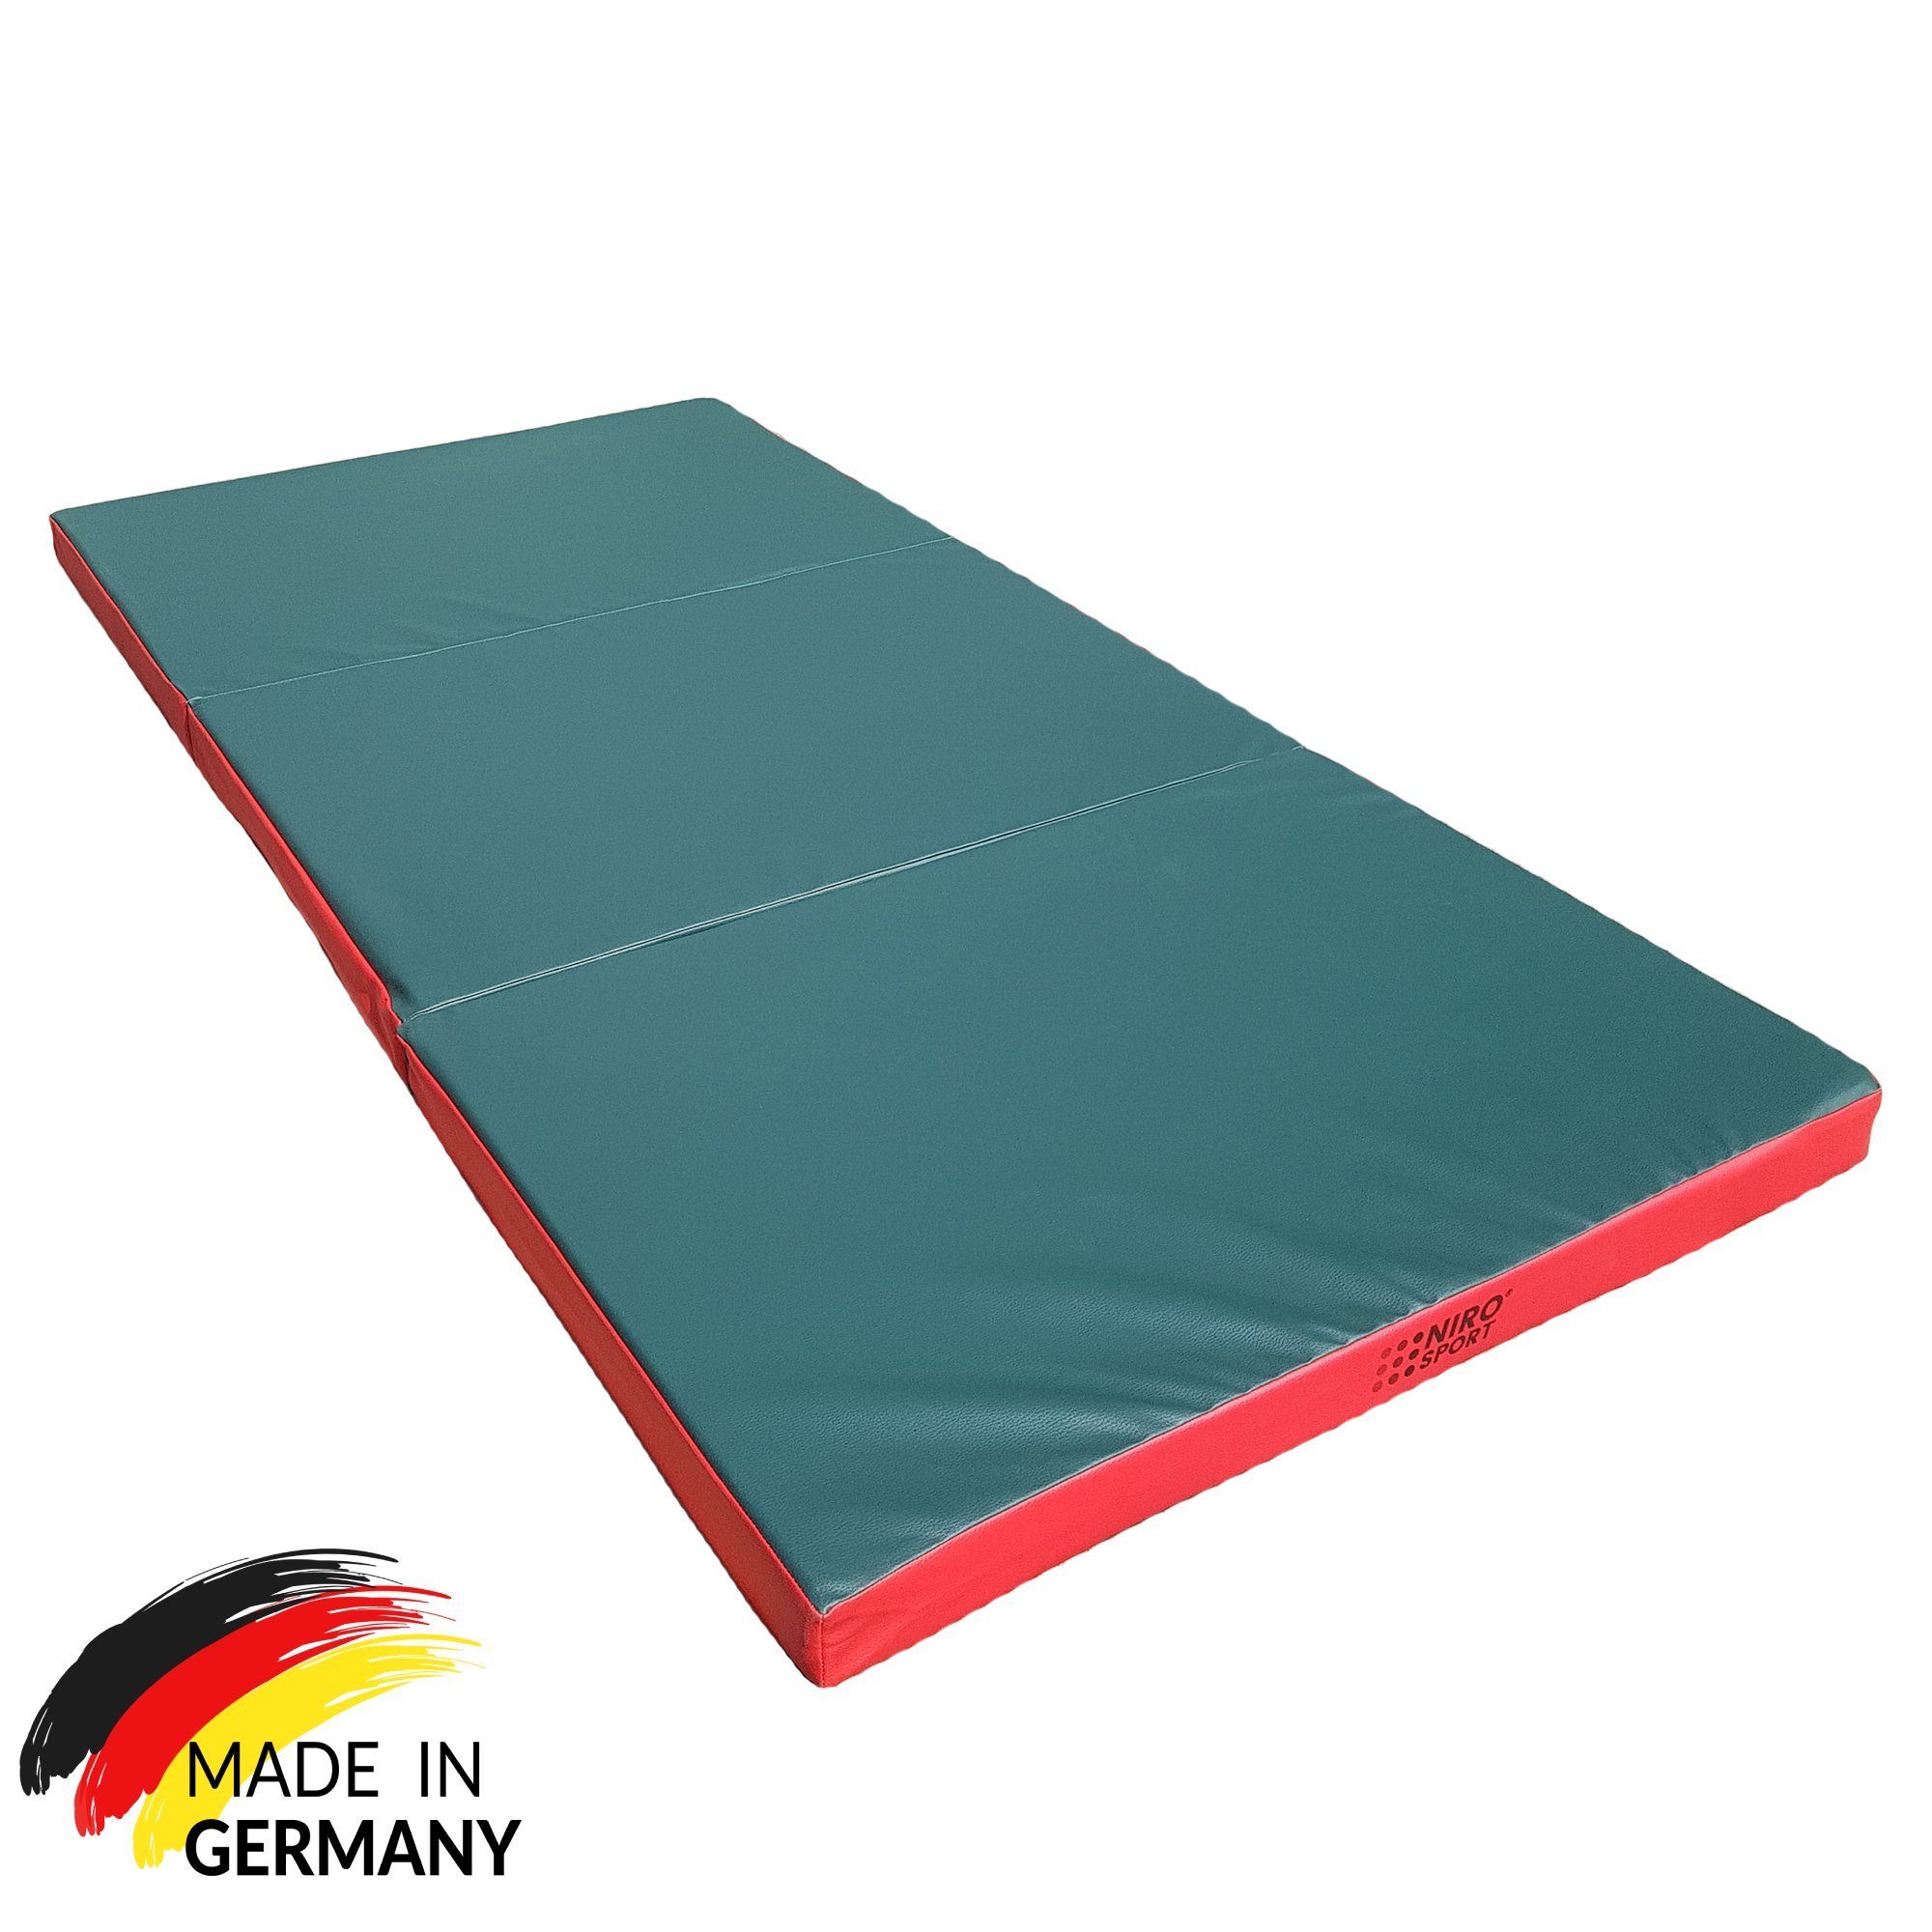 NiroSport Weichbodenmatte Turnmatte Gymnastikmatte Schutzmatte Fitnessmatte 150x100x8cm (1er-Pack), abwaschbar, robust grün